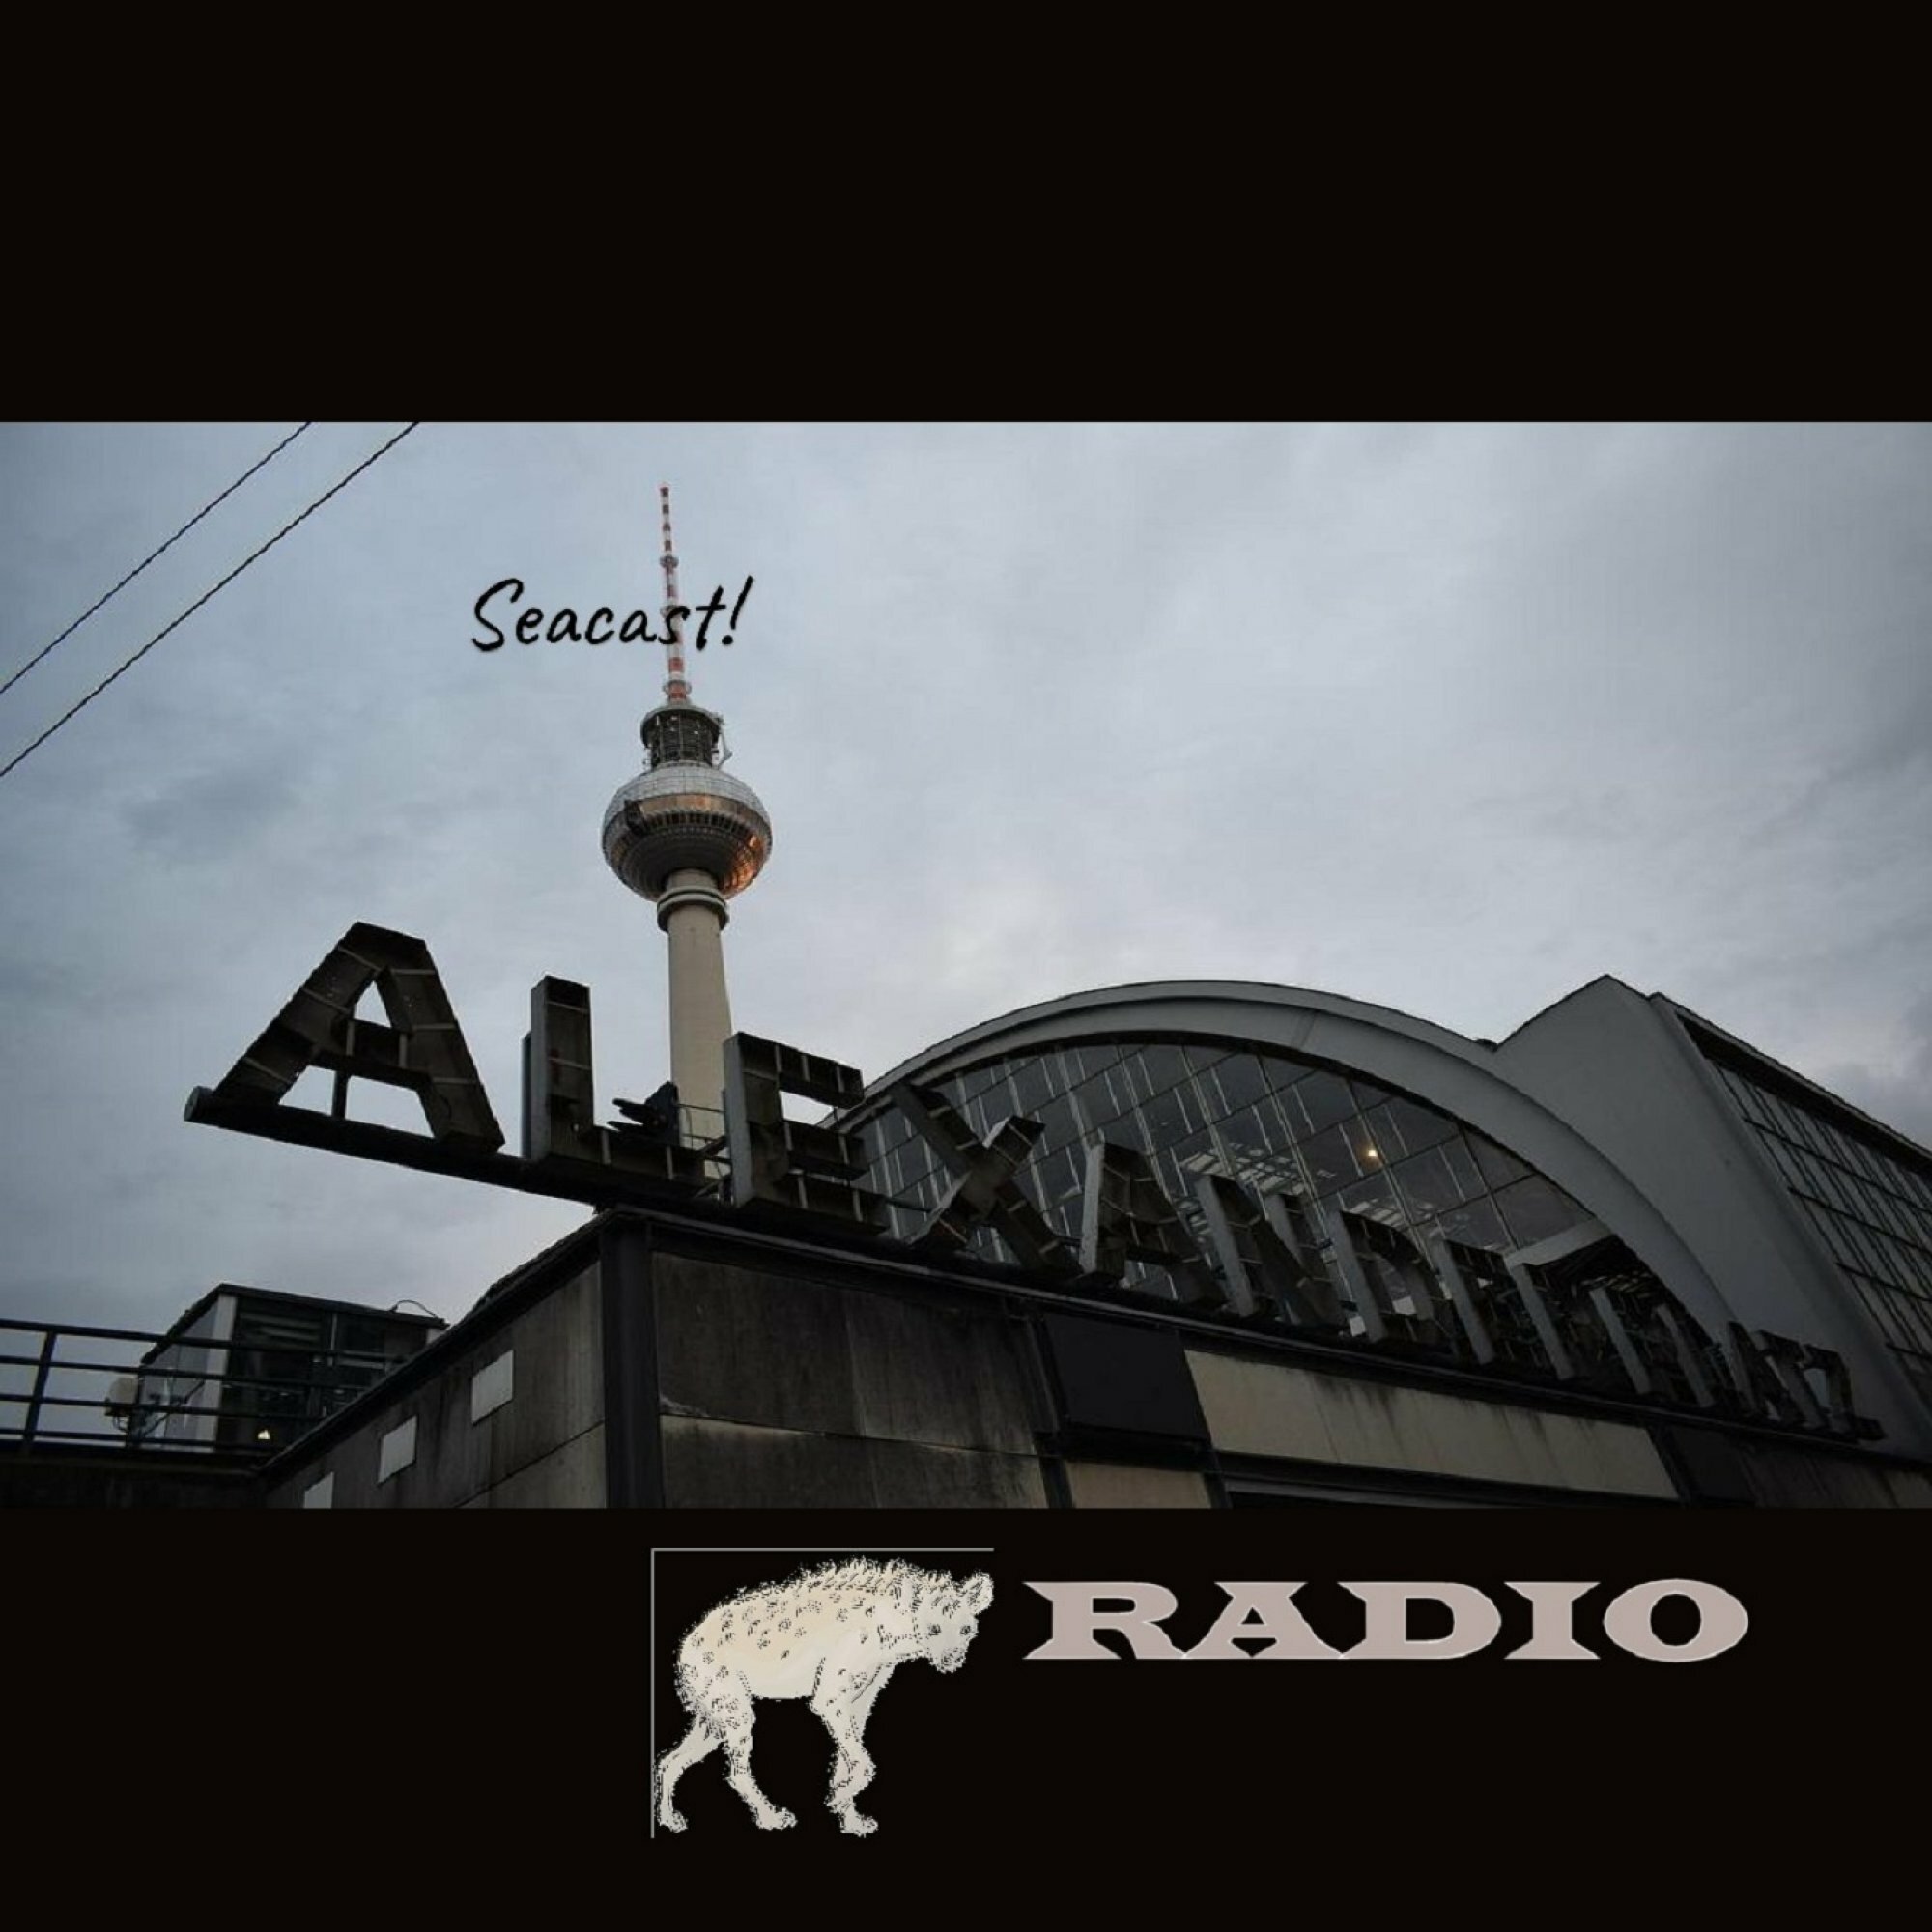 Seacast! Radio